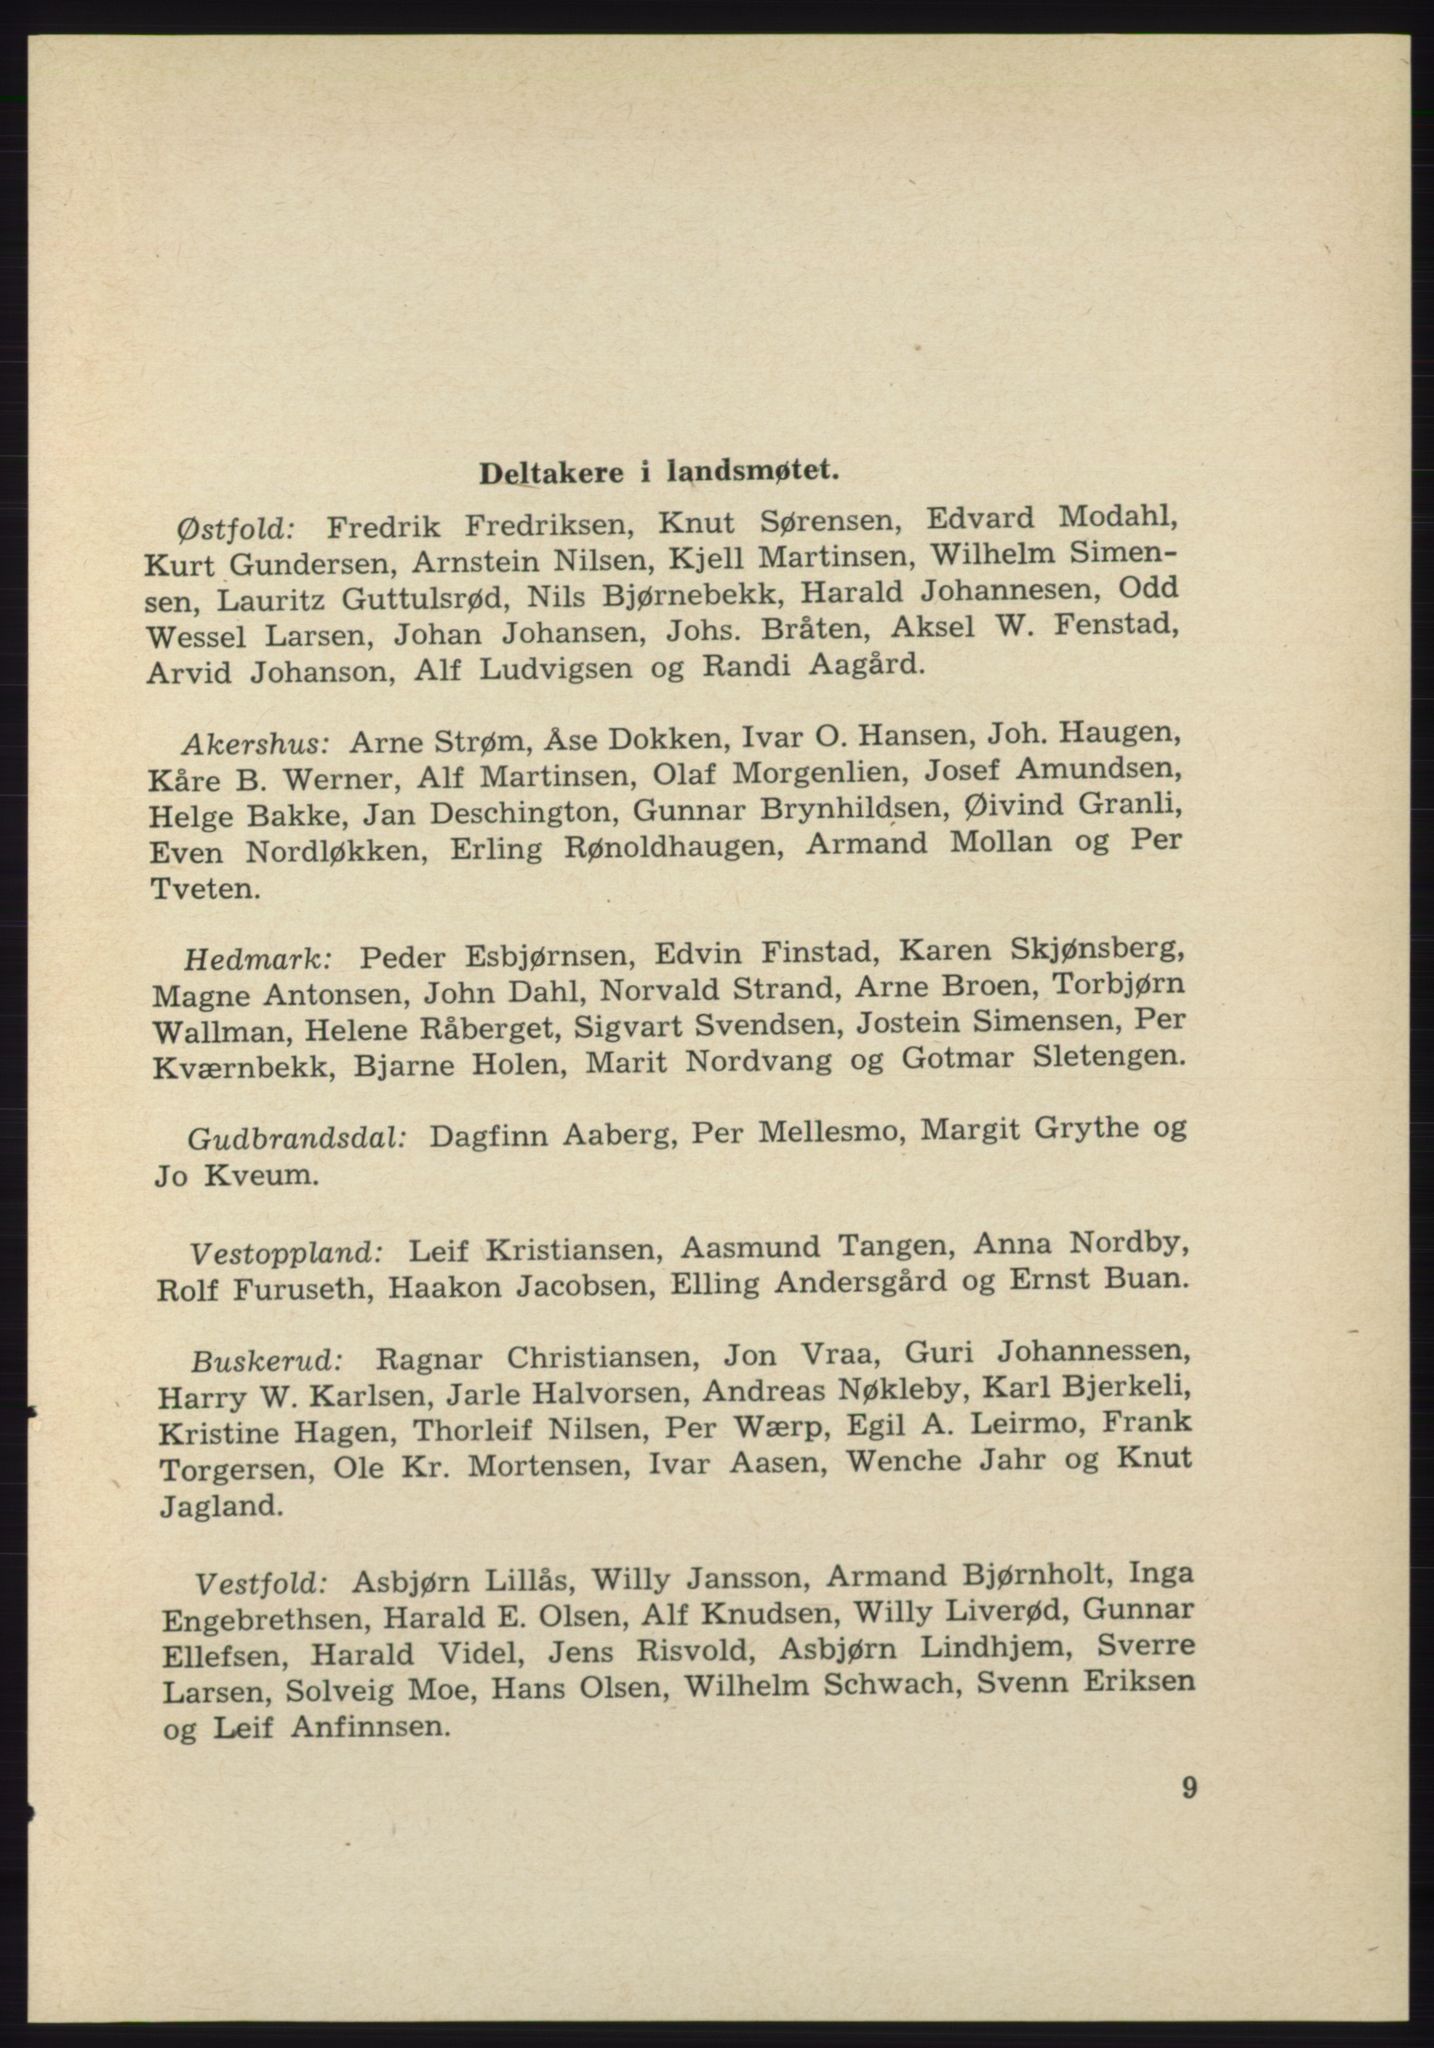 Det norske Arbeiderparti - publikasjoner, AAB/-/-/-: Protokoll over forhandlingene på det 39. ordinære landsmøte 23.-25. mai 1963 i Oslo, 1963, p. 9